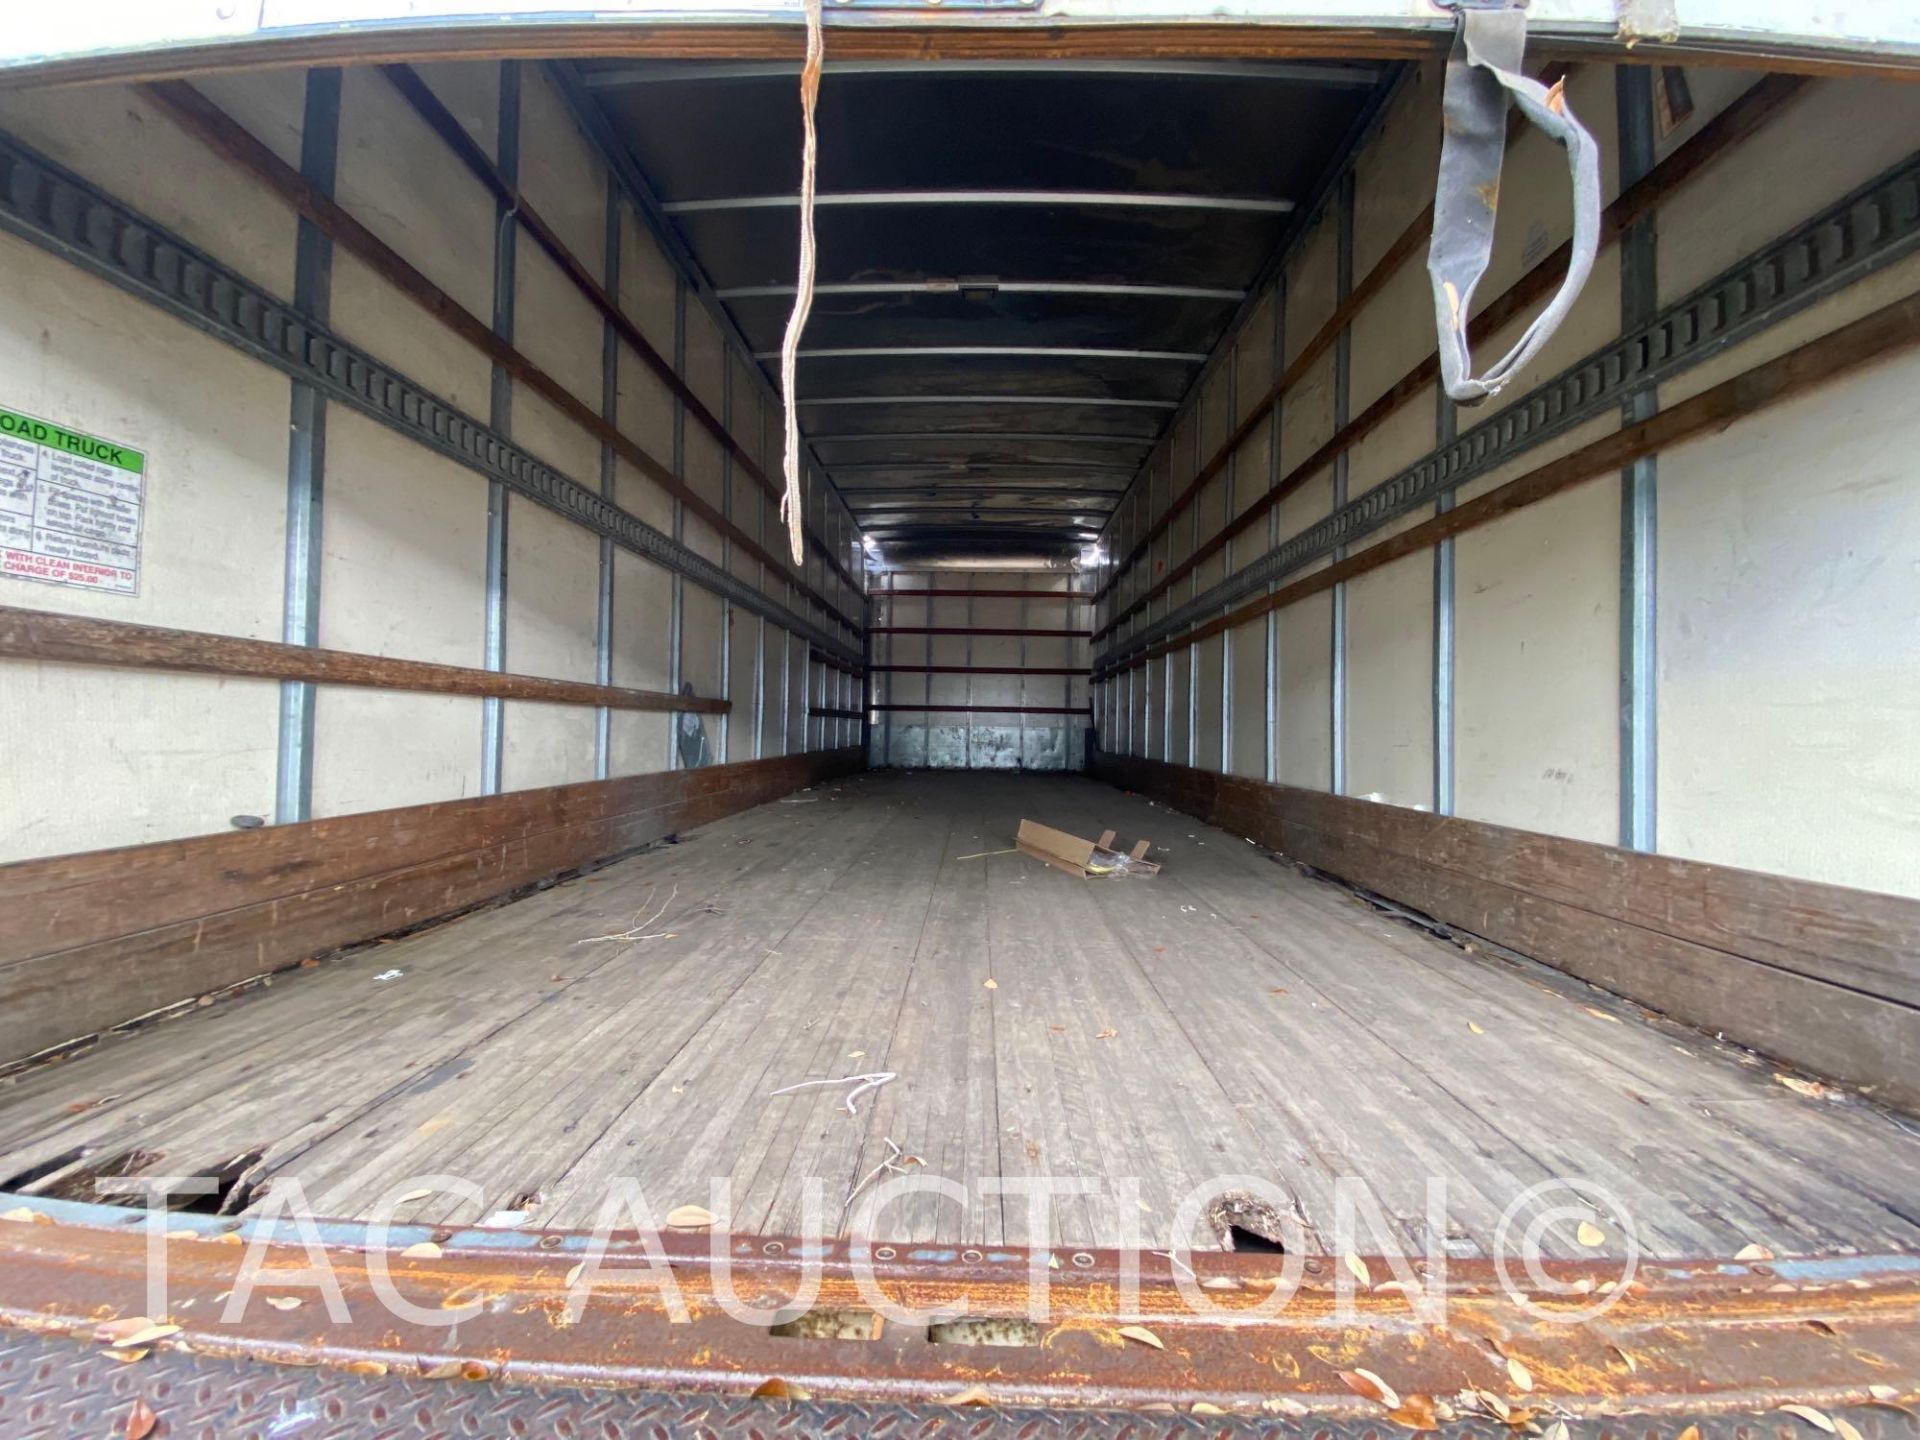 2016 Hino 268 26ft Box Truck - Image 19 of 69